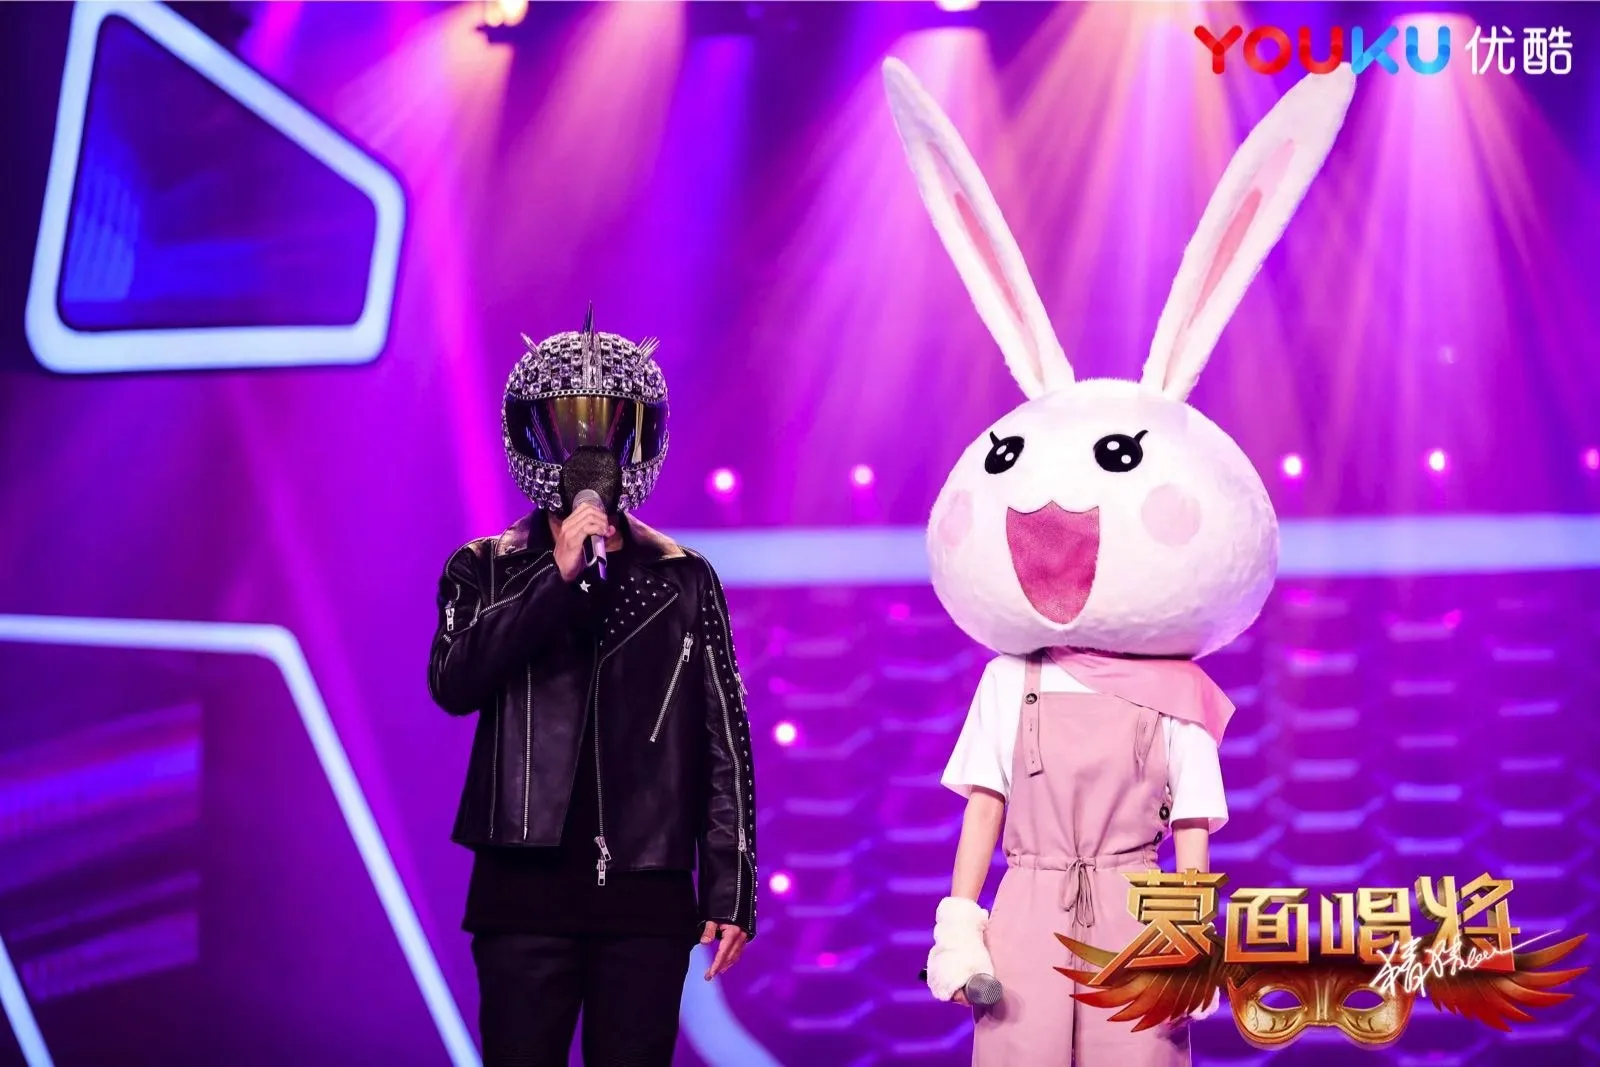 Youku 'masked 3' masked singer turns identity into mystery. JPG